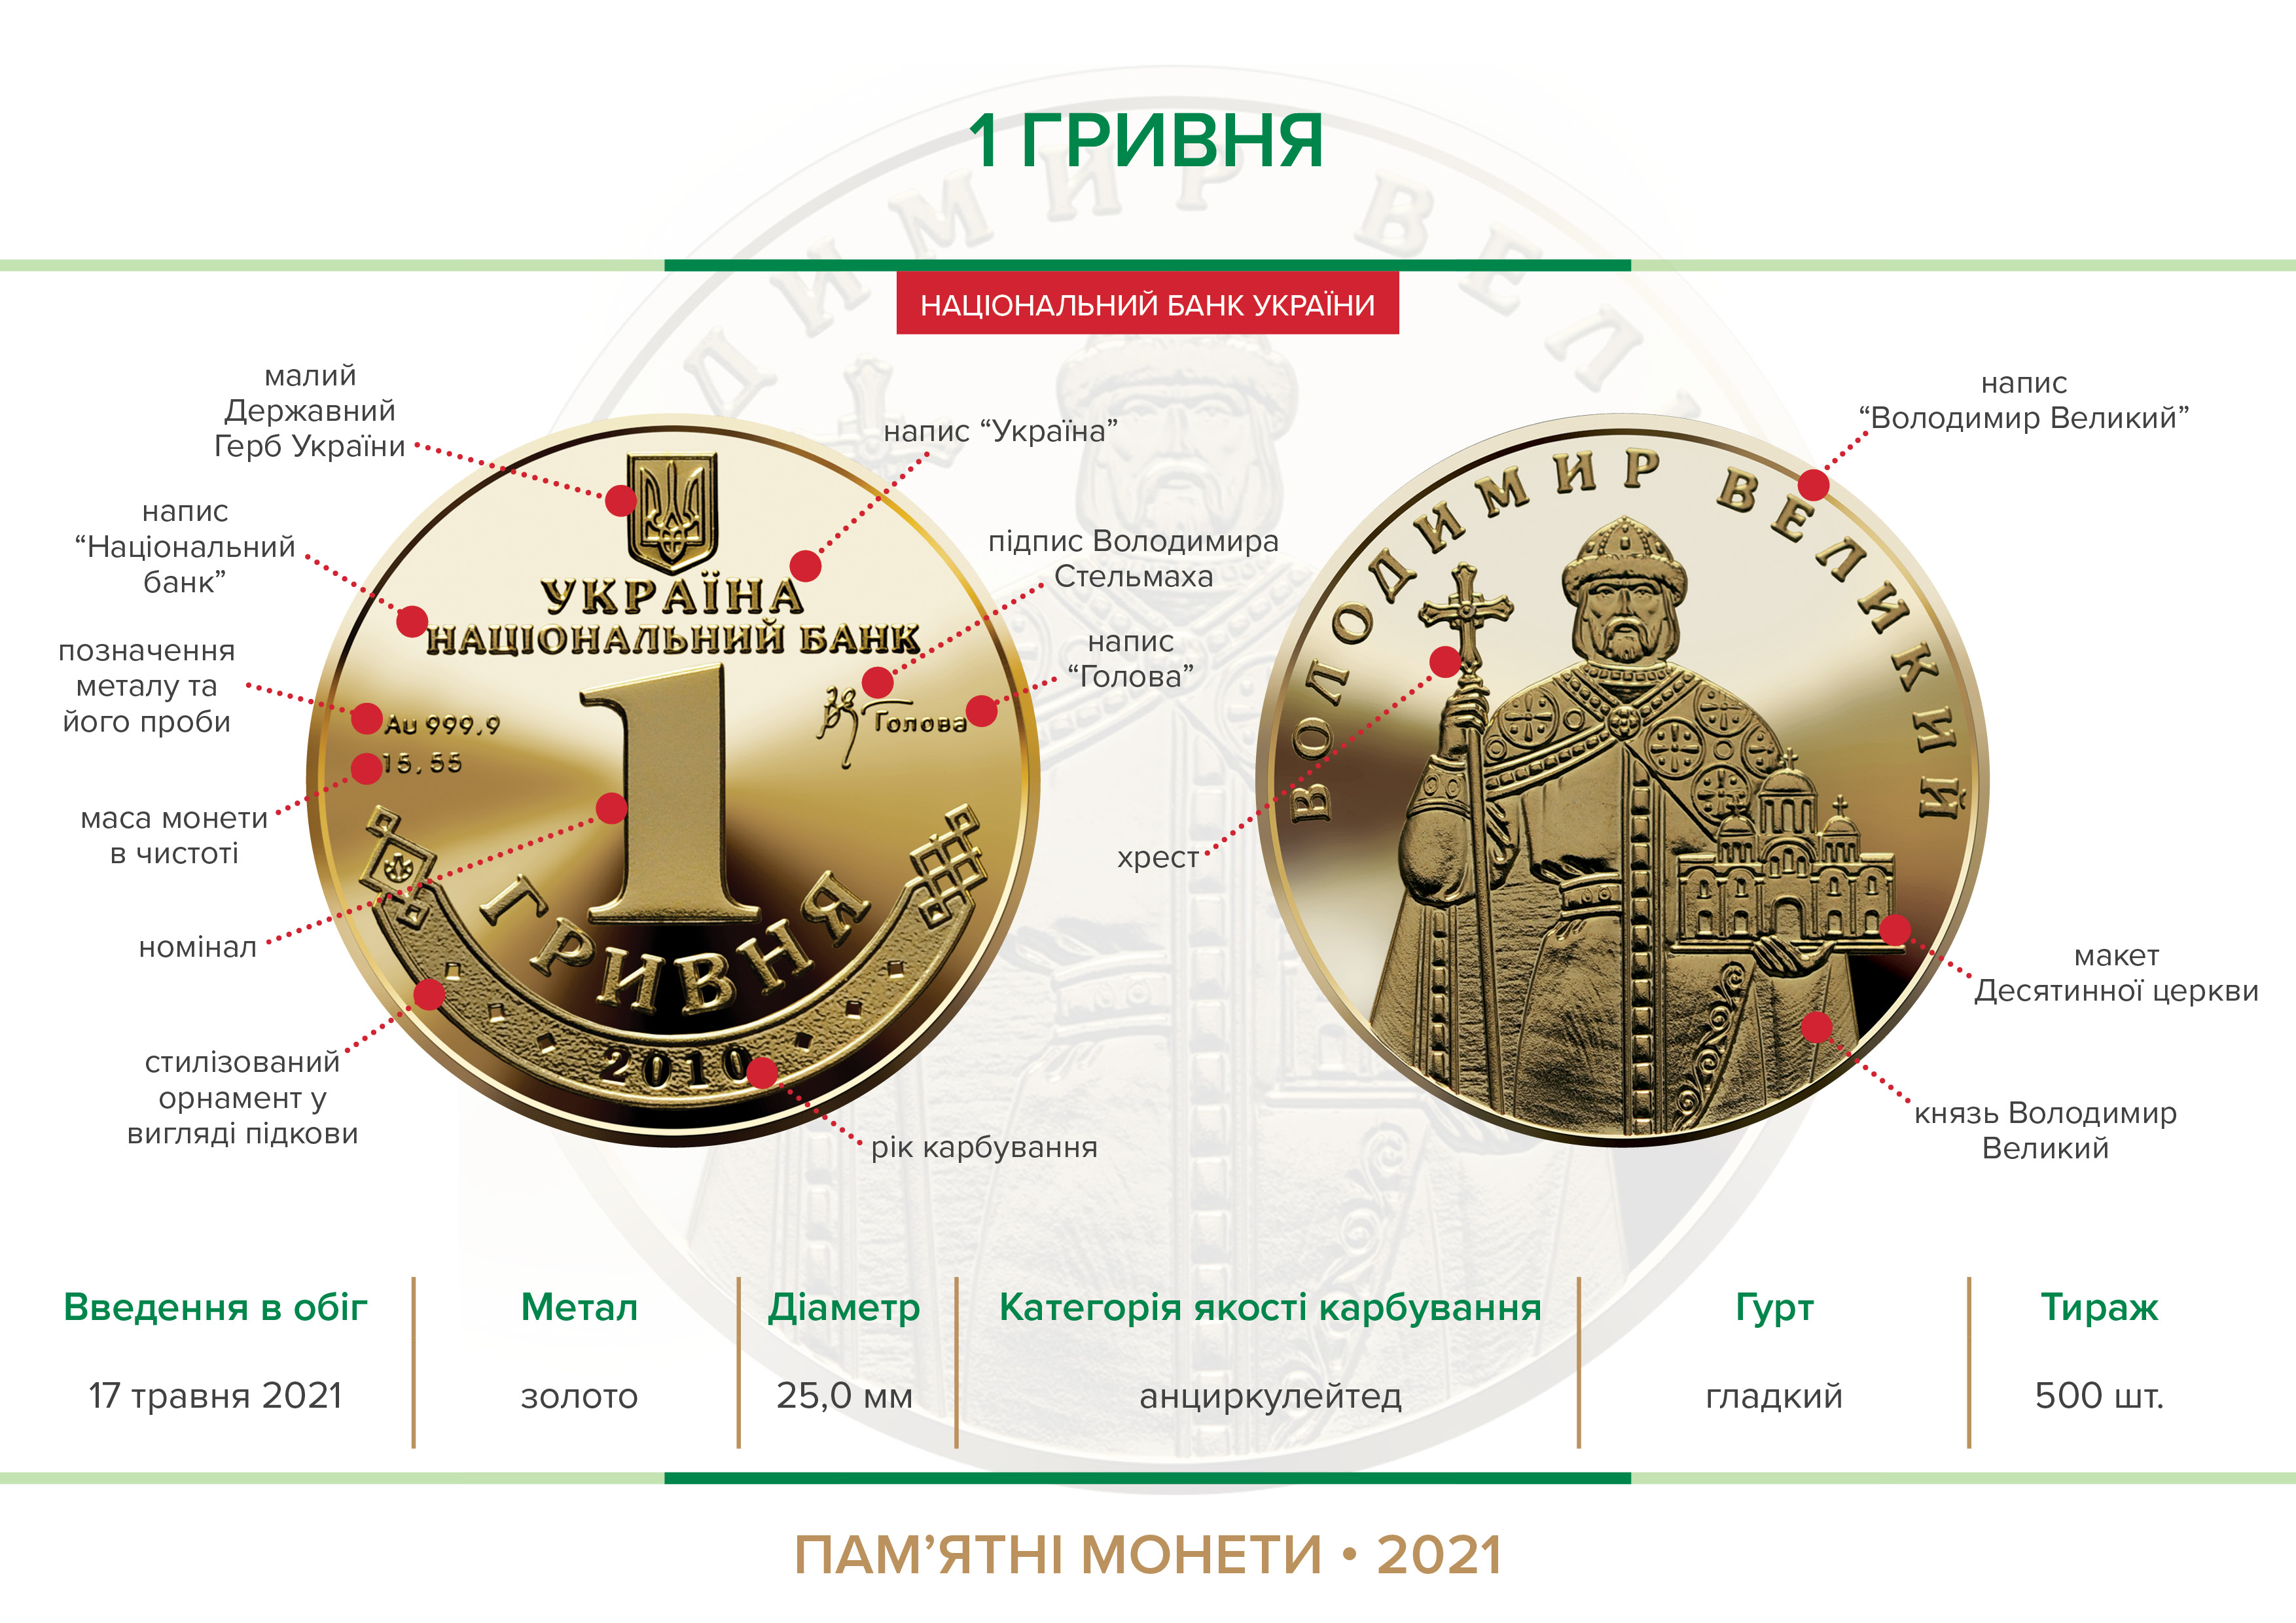 Наступний аукціон з продажу пам’ятної монети "1 Гривня" відбудеться 27 травня 2021 року